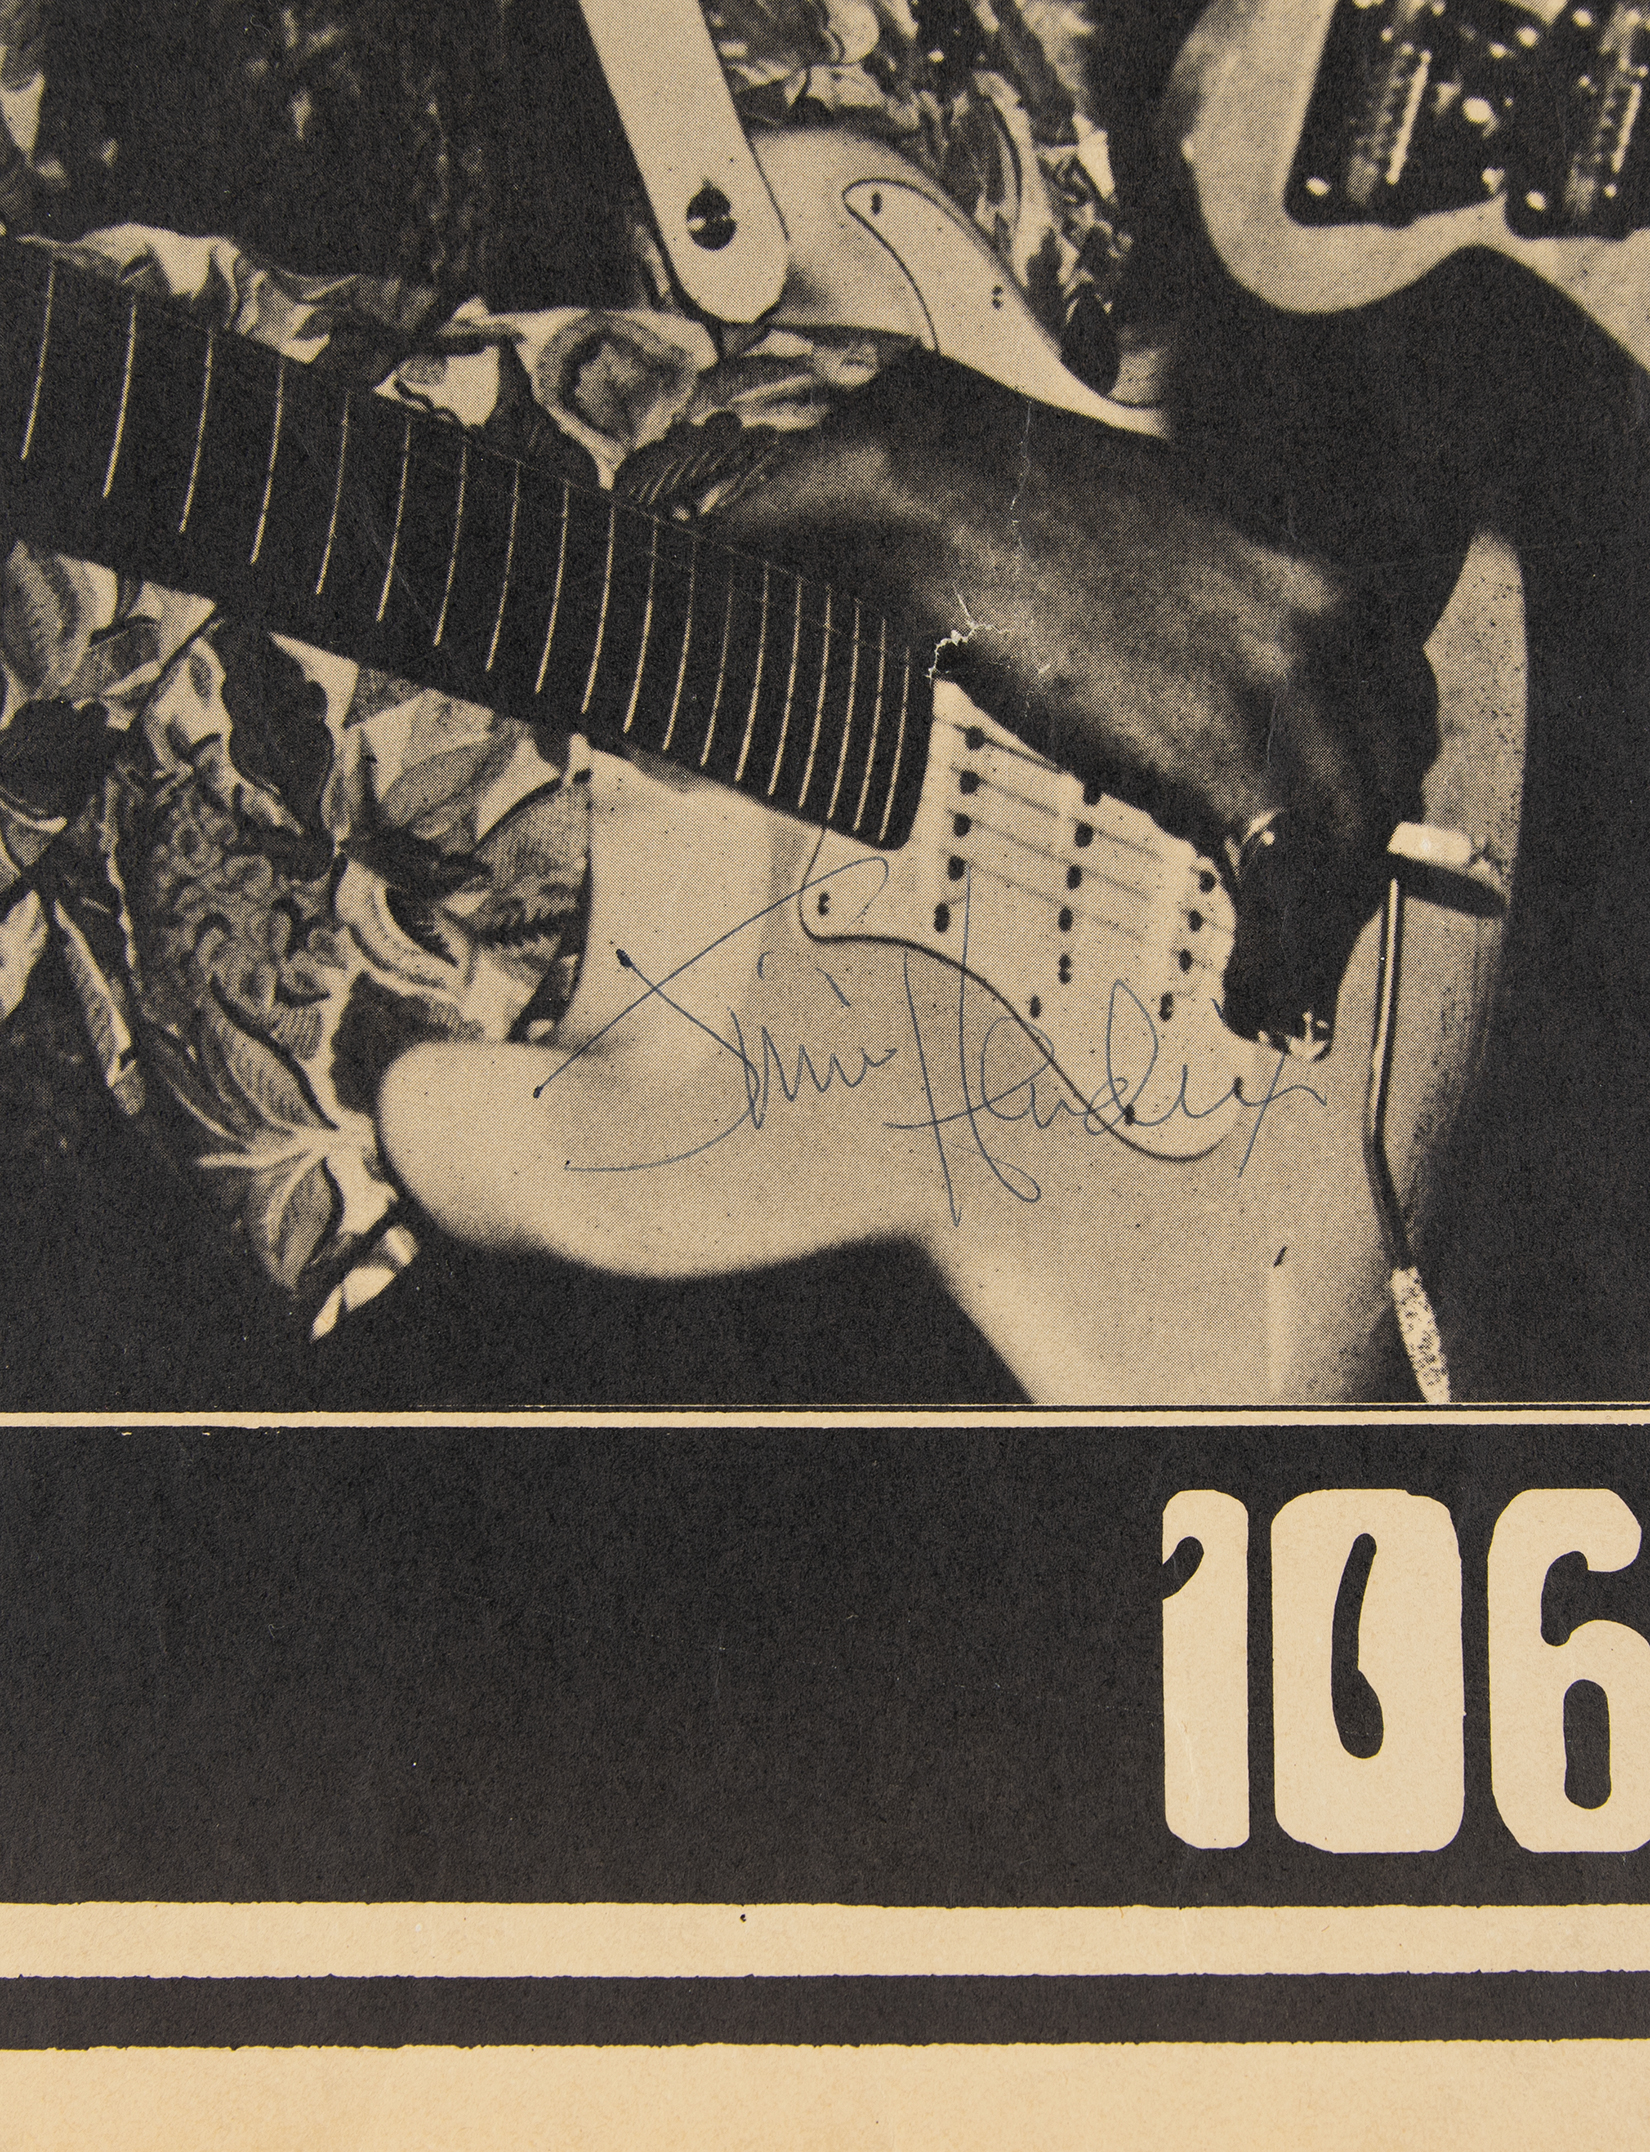 Lot #3050 Jimi Hendrix Rare 1968 Signed Poster - Image 2